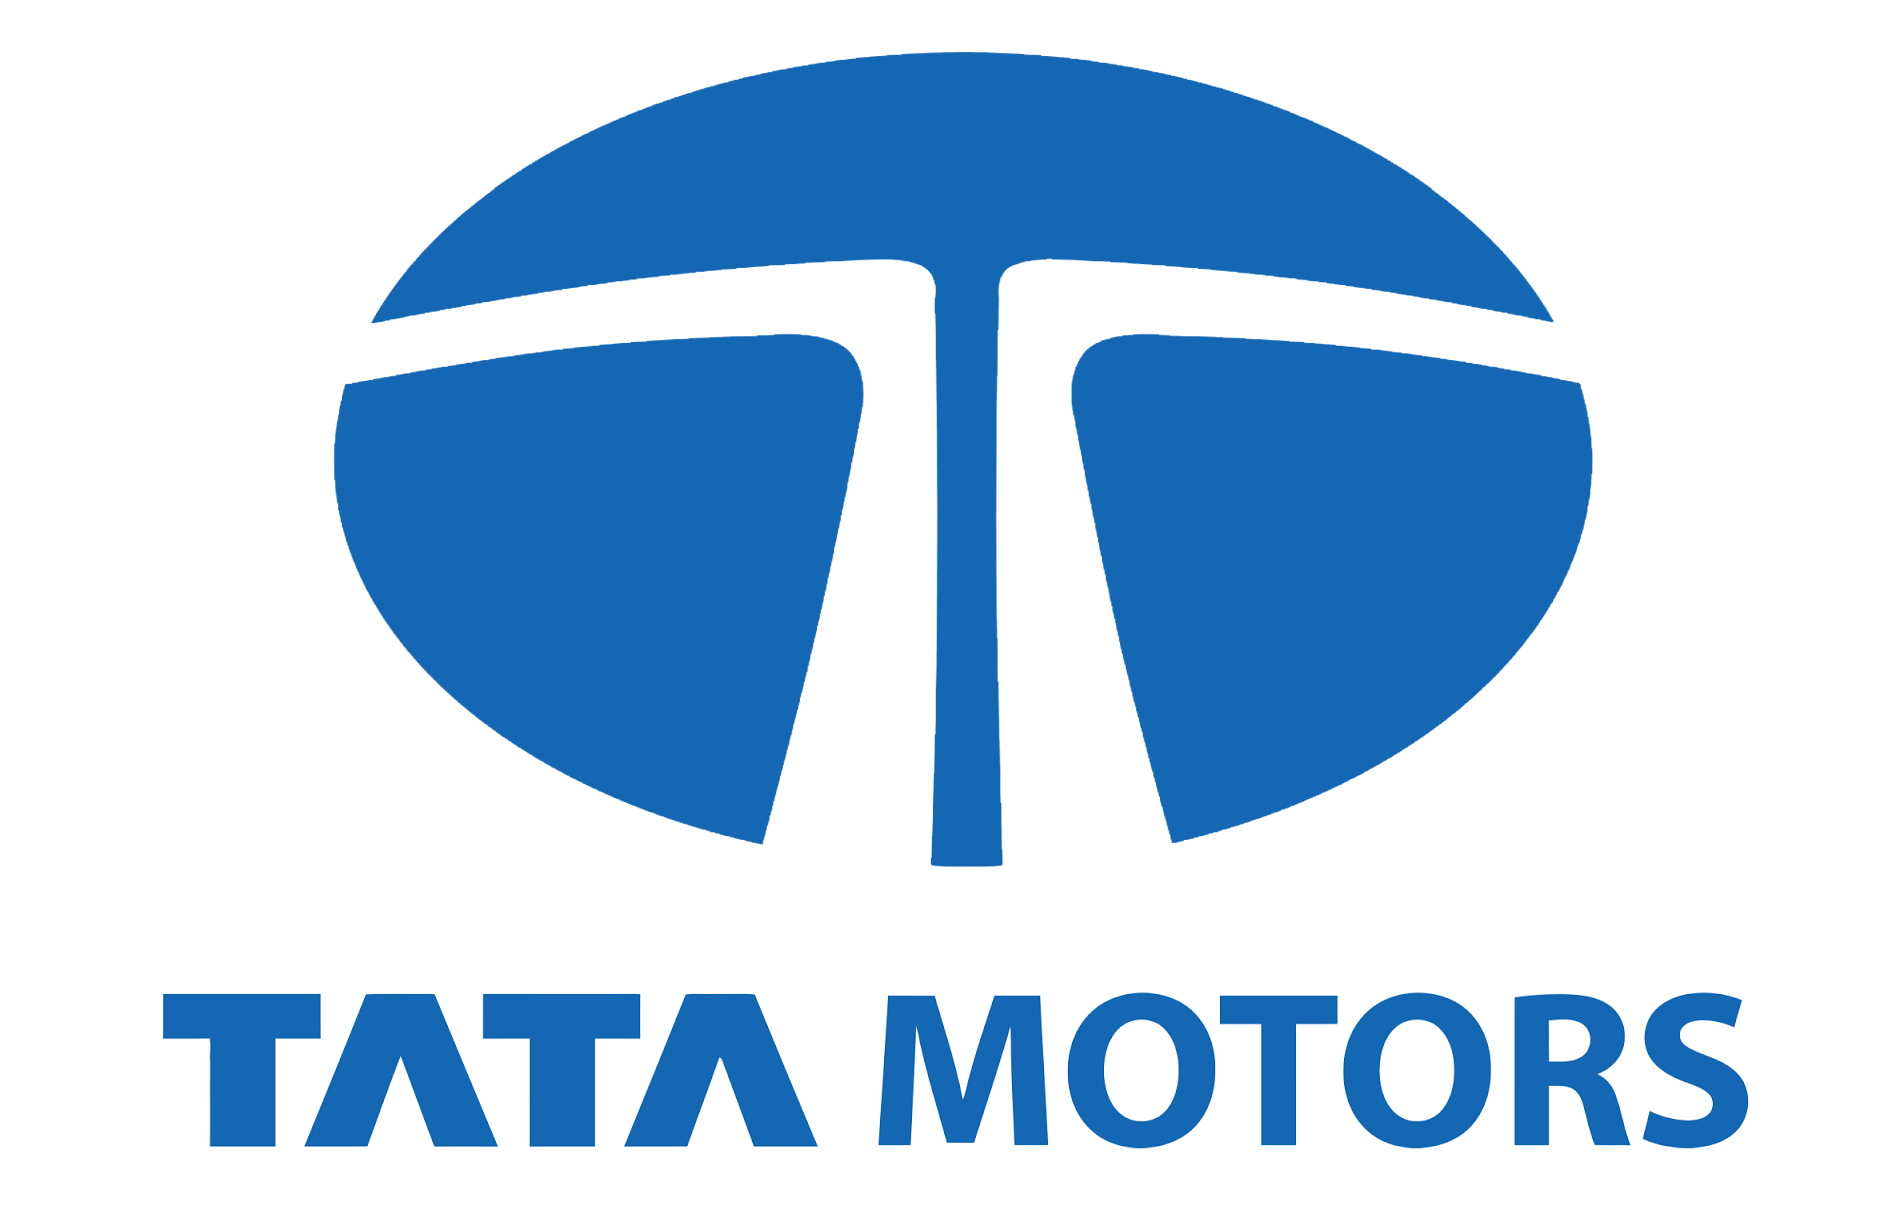 Tata Motors Cars Showroom - Brijlax Motors - Logo